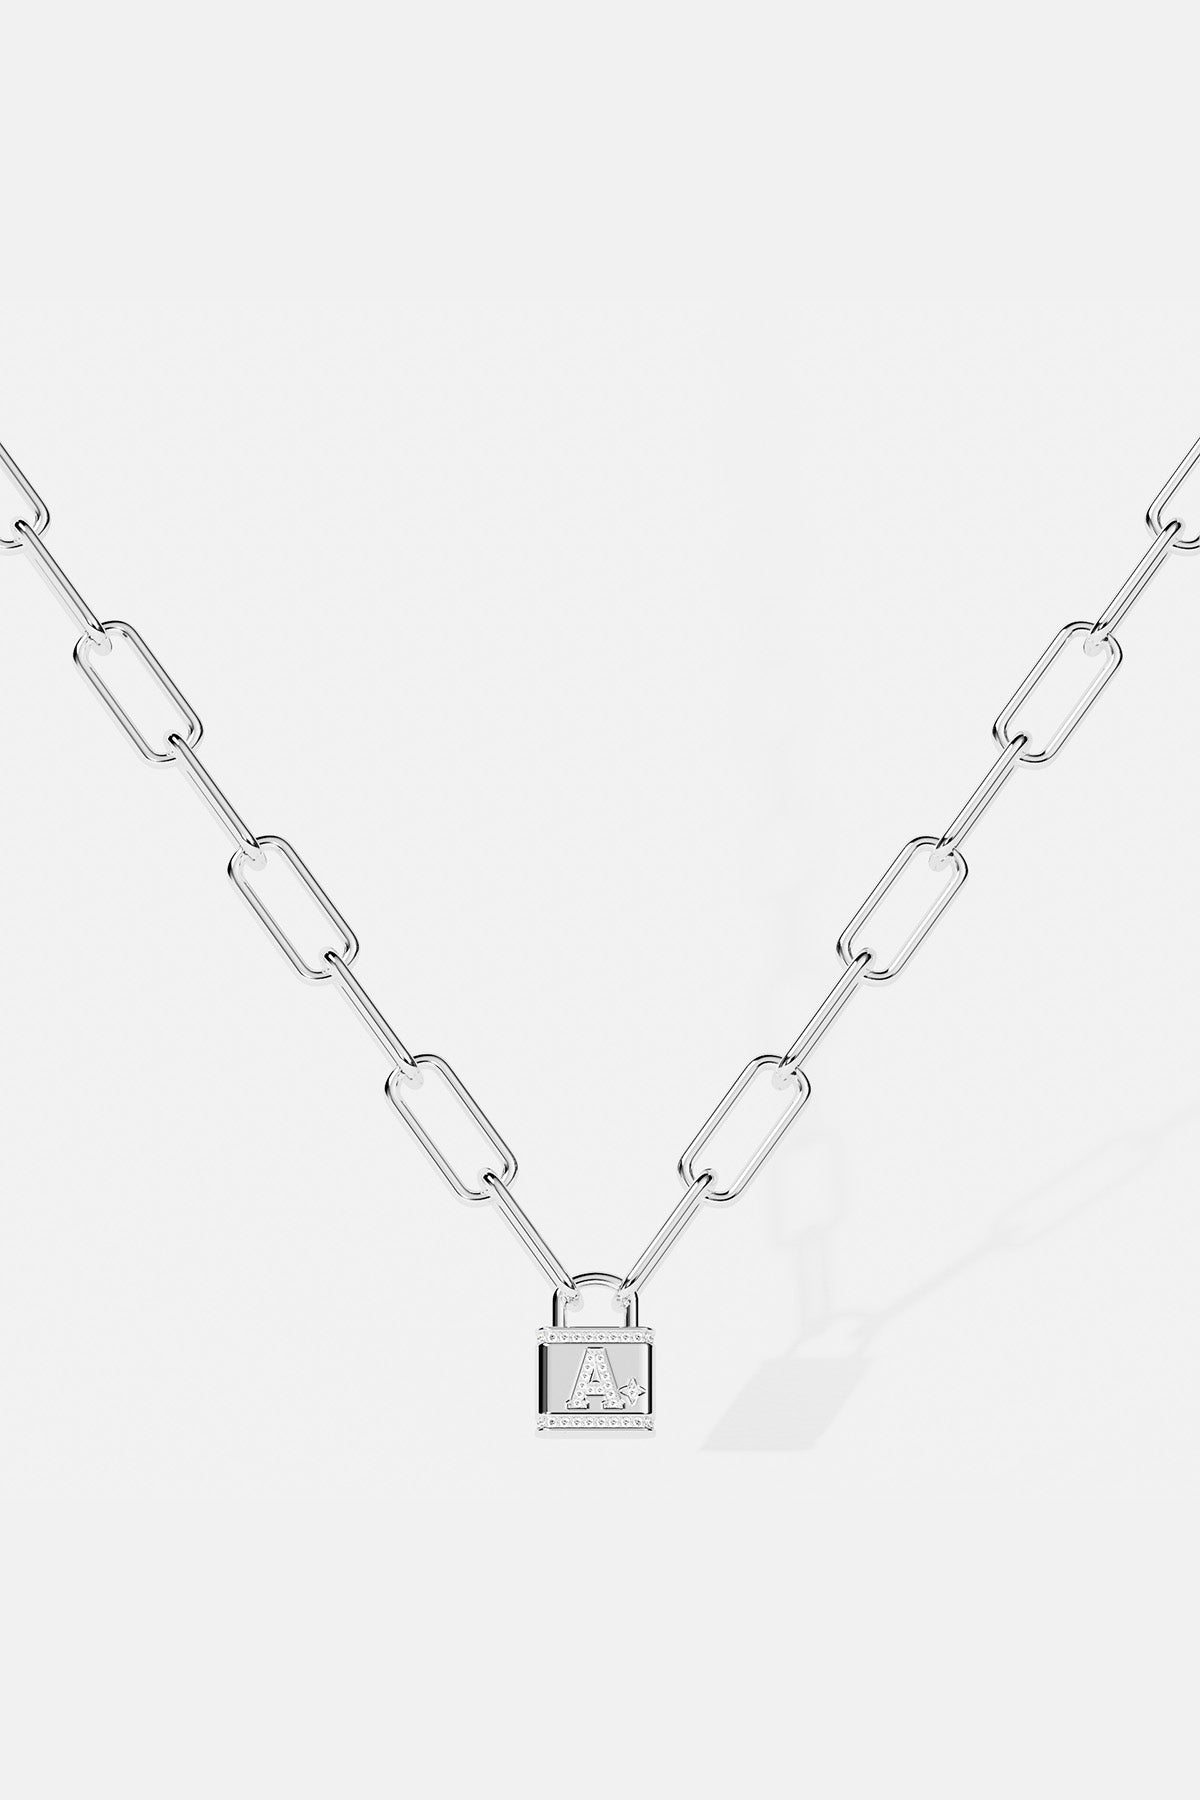 Schloss-Halskette mit dem Buchstaben – Silber